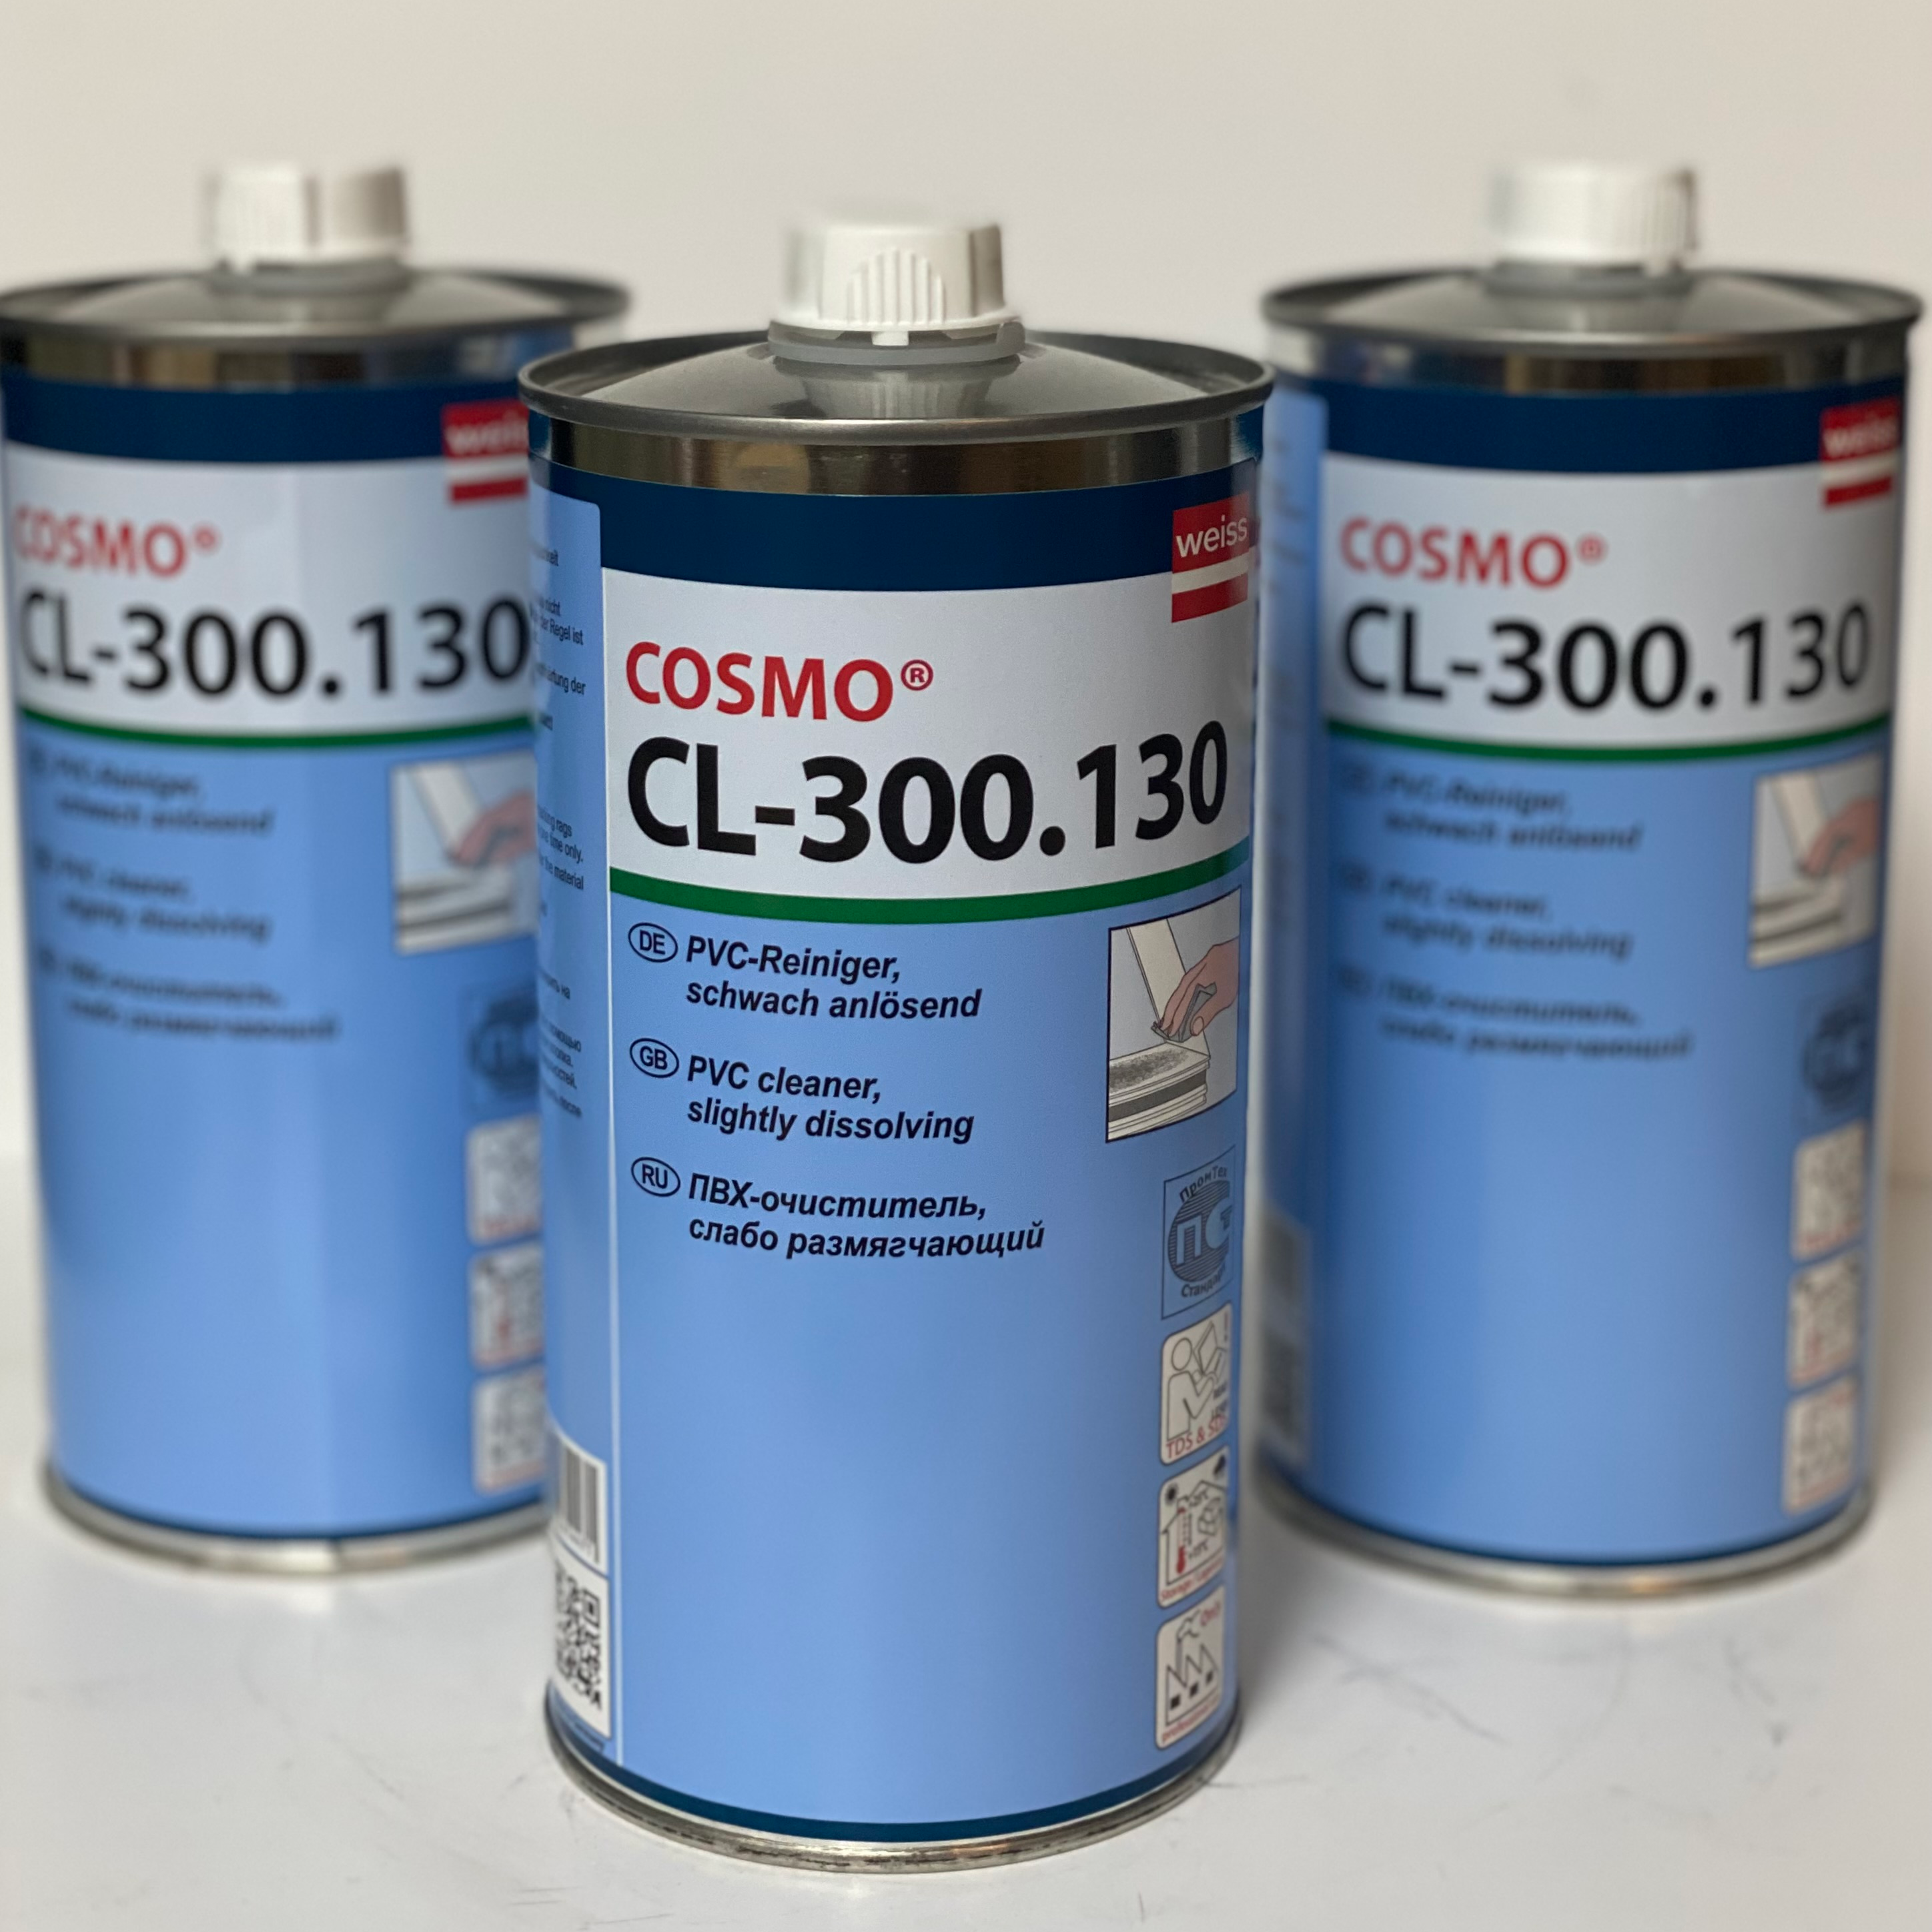 Космофен 5. Очиститель Cosmofen CL-300.130. Cosmofen 10 очиститель. Очиститель для ПВХ космофен 10. Очиститель космофен 10 и 20.